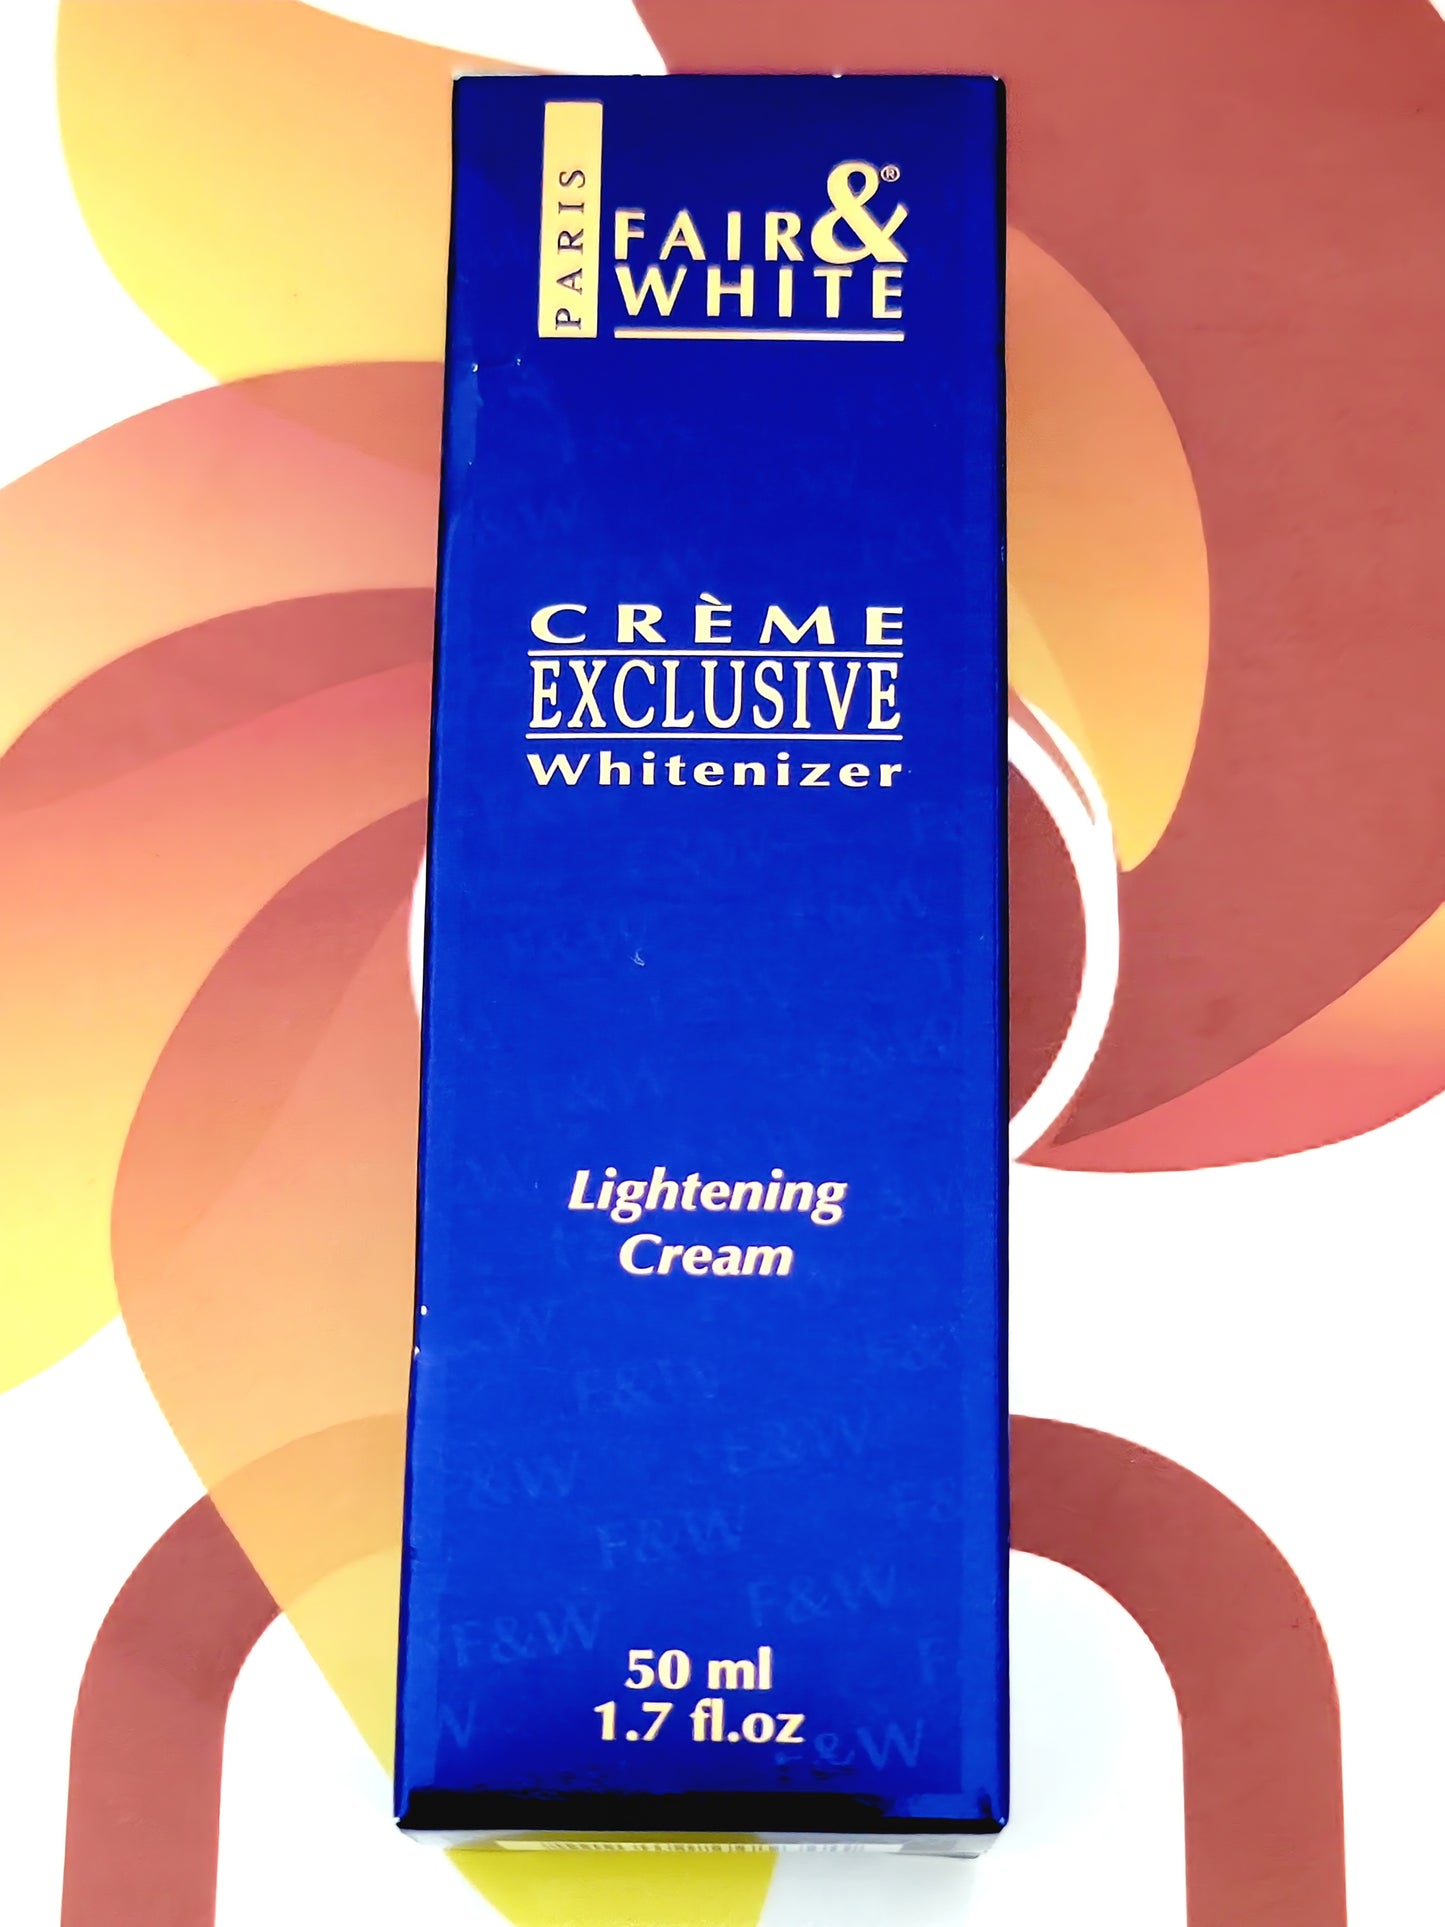 Fair and White Paris Exclusive Whitenizer Lightening Cream 50ml